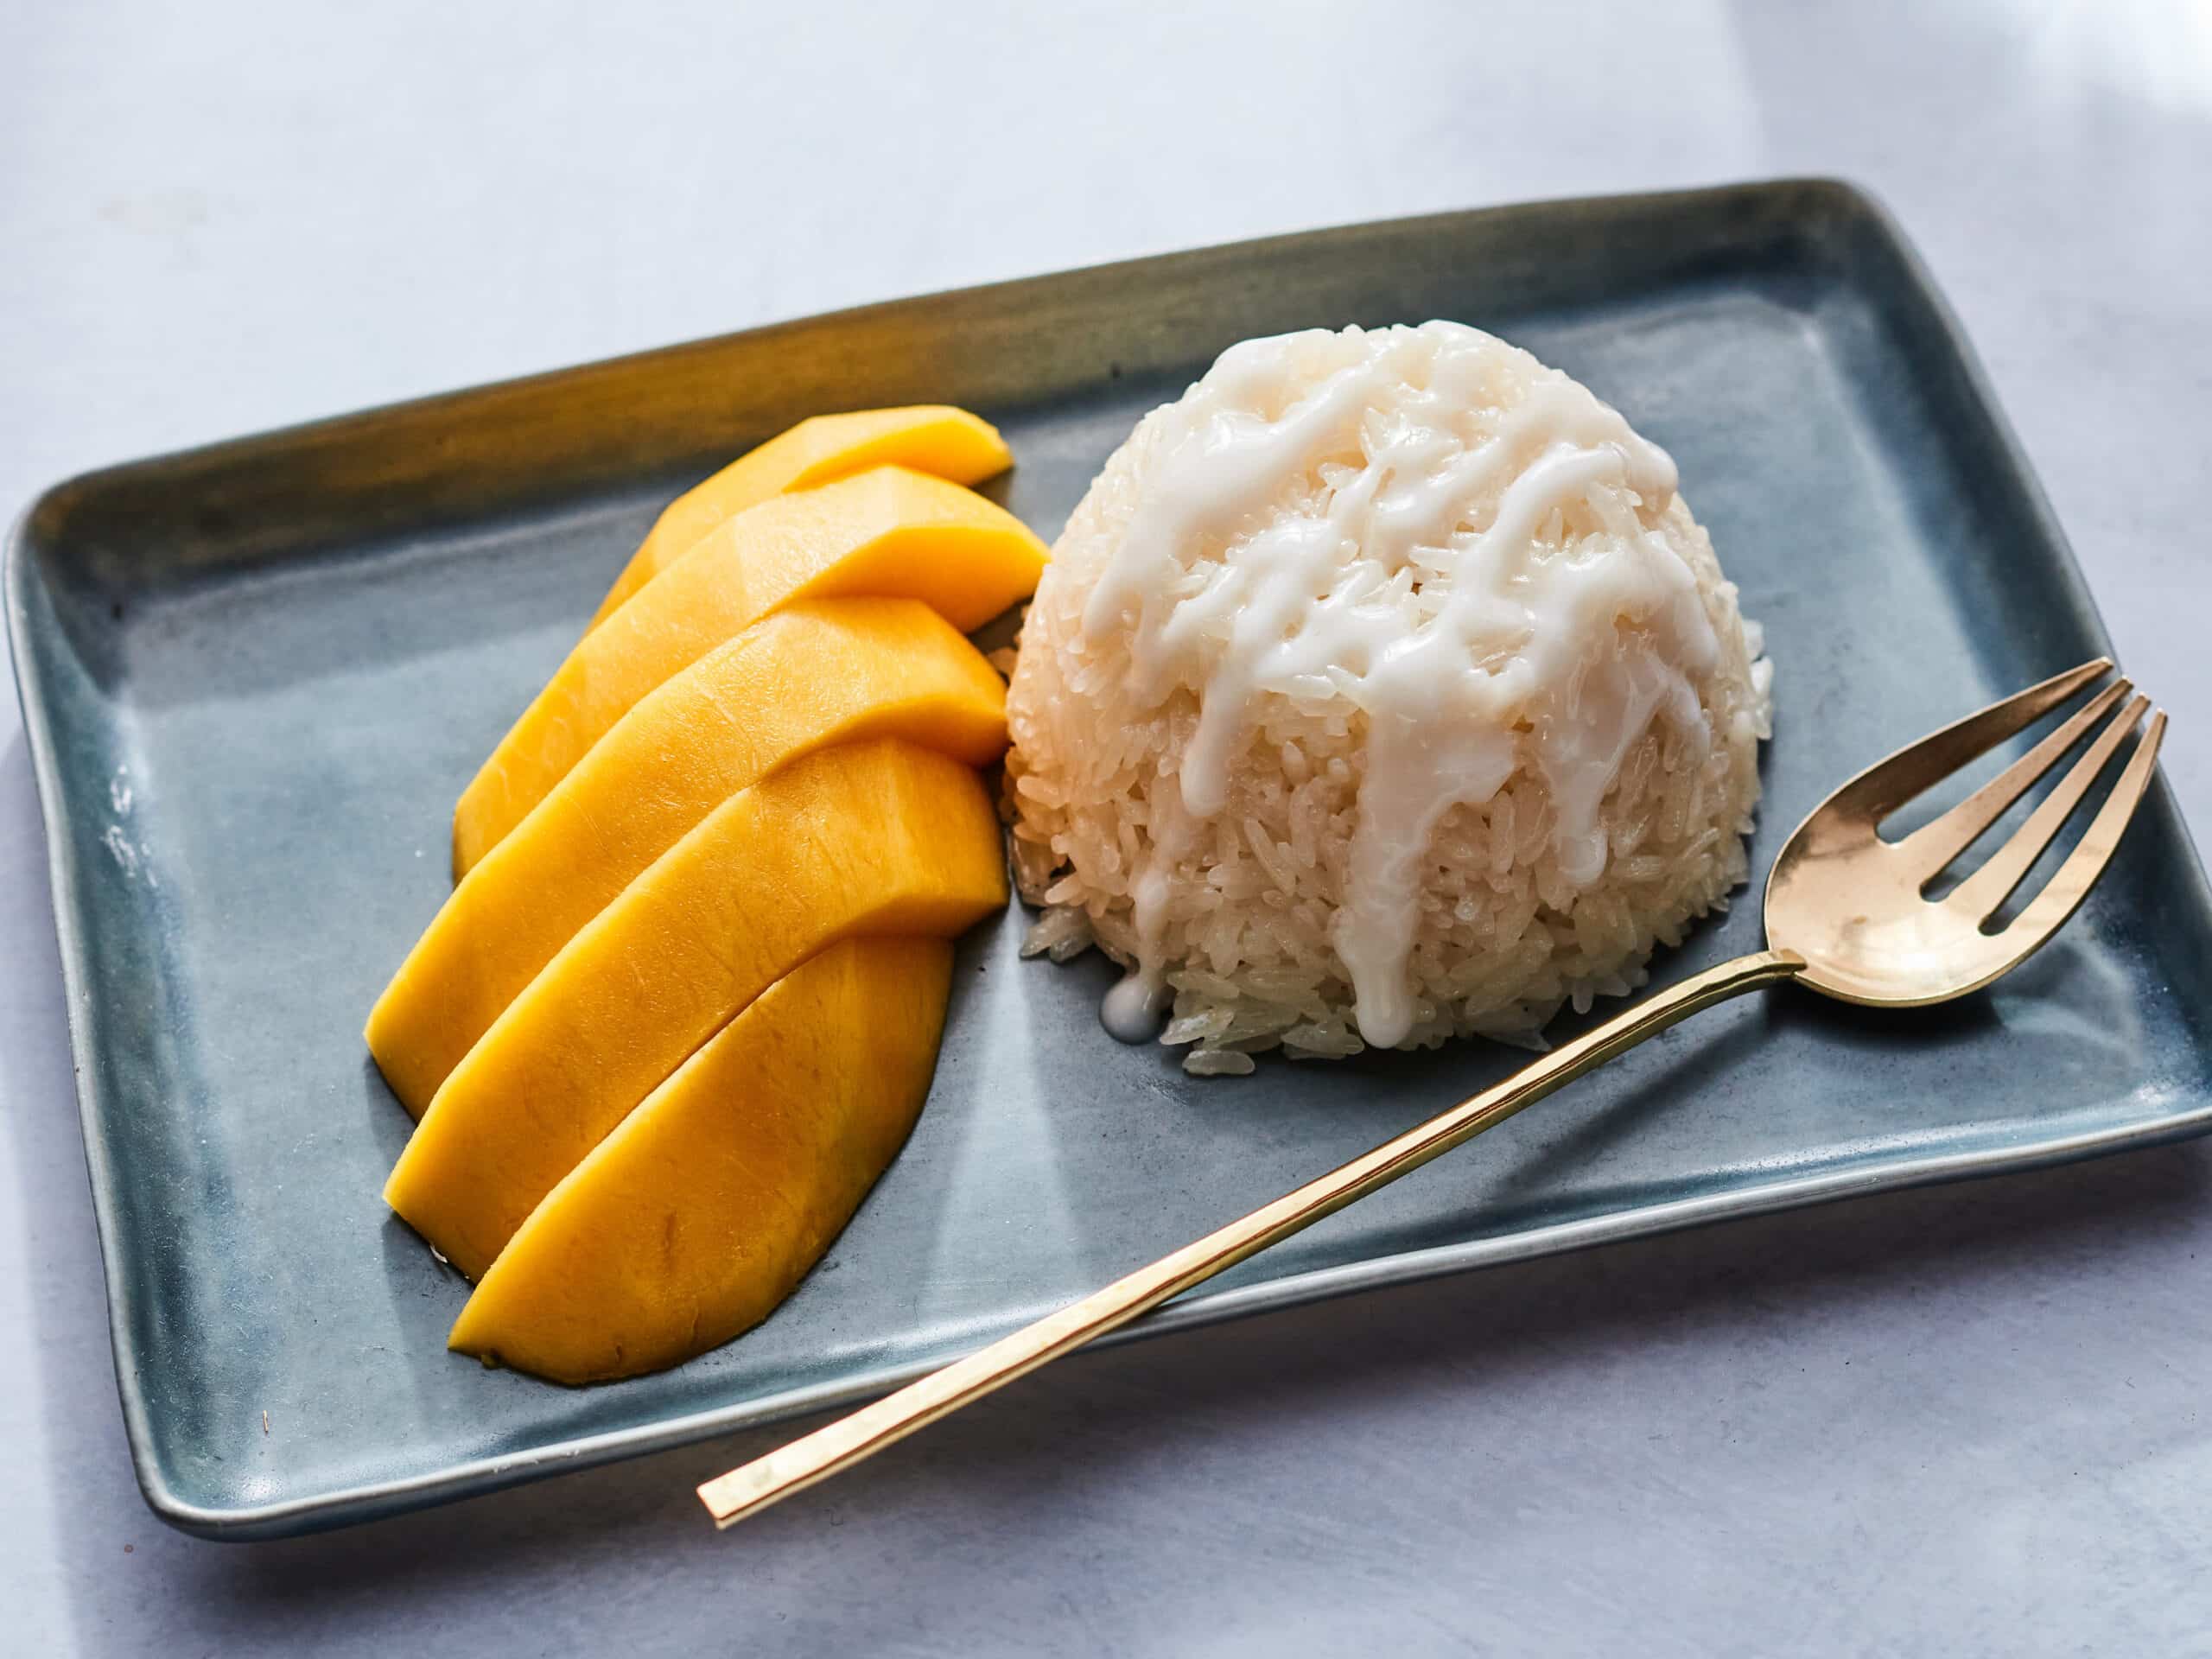 3. Mango Sticky Rice: 